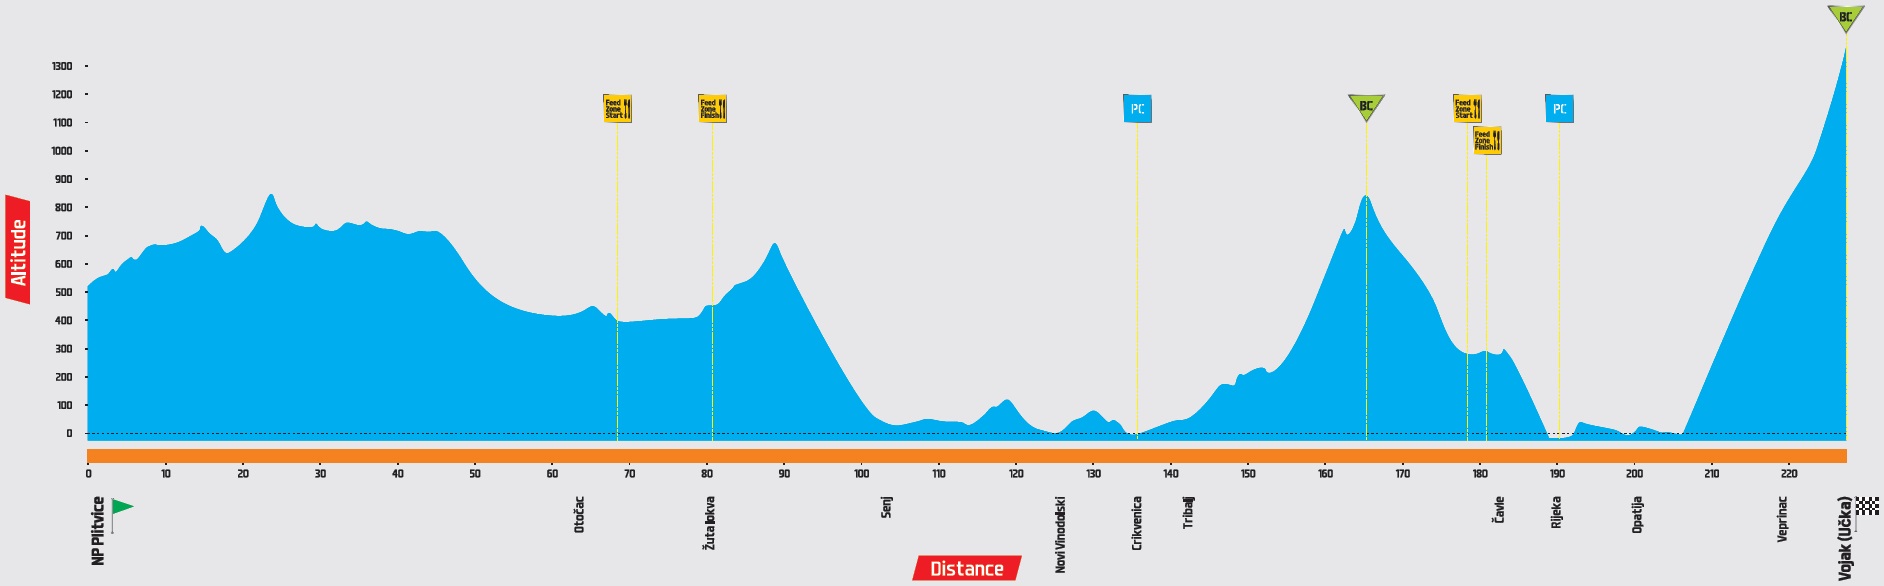 Hhenprofil Tour of Croatia 2015 - Etappe 3